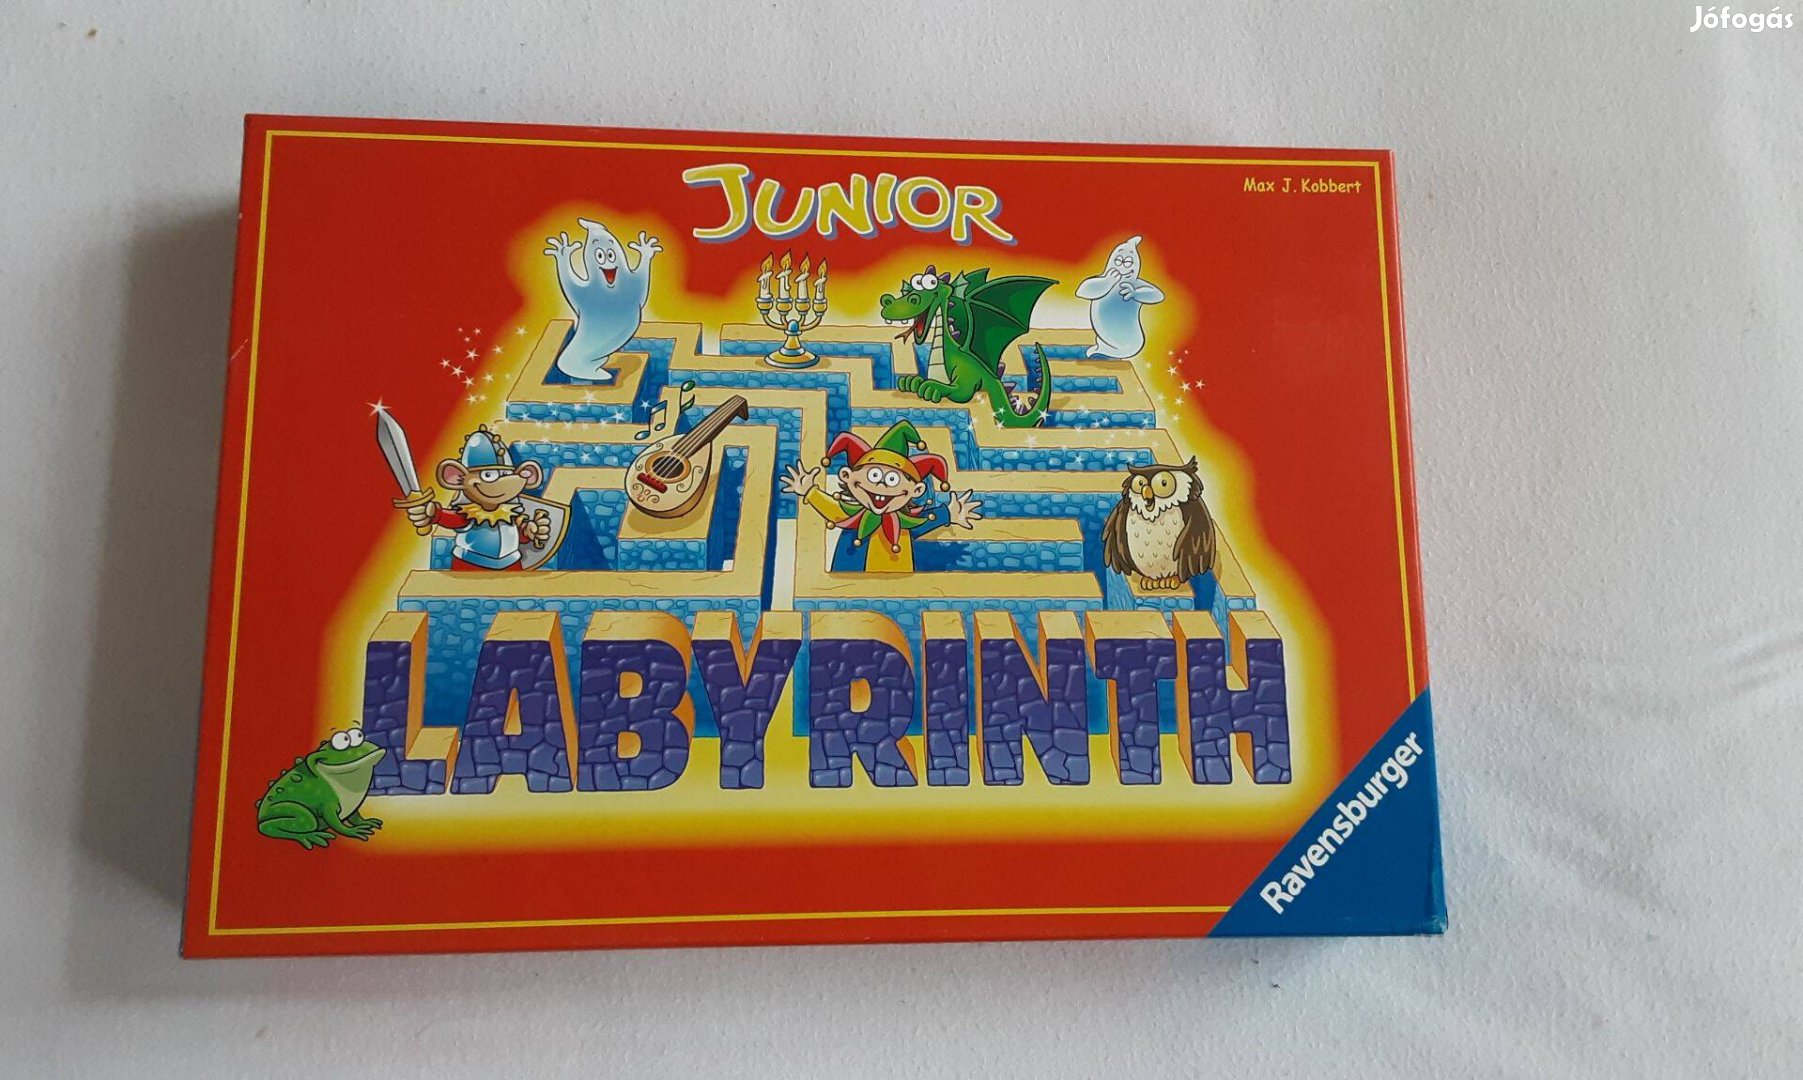 Junior labirintus társas eladó